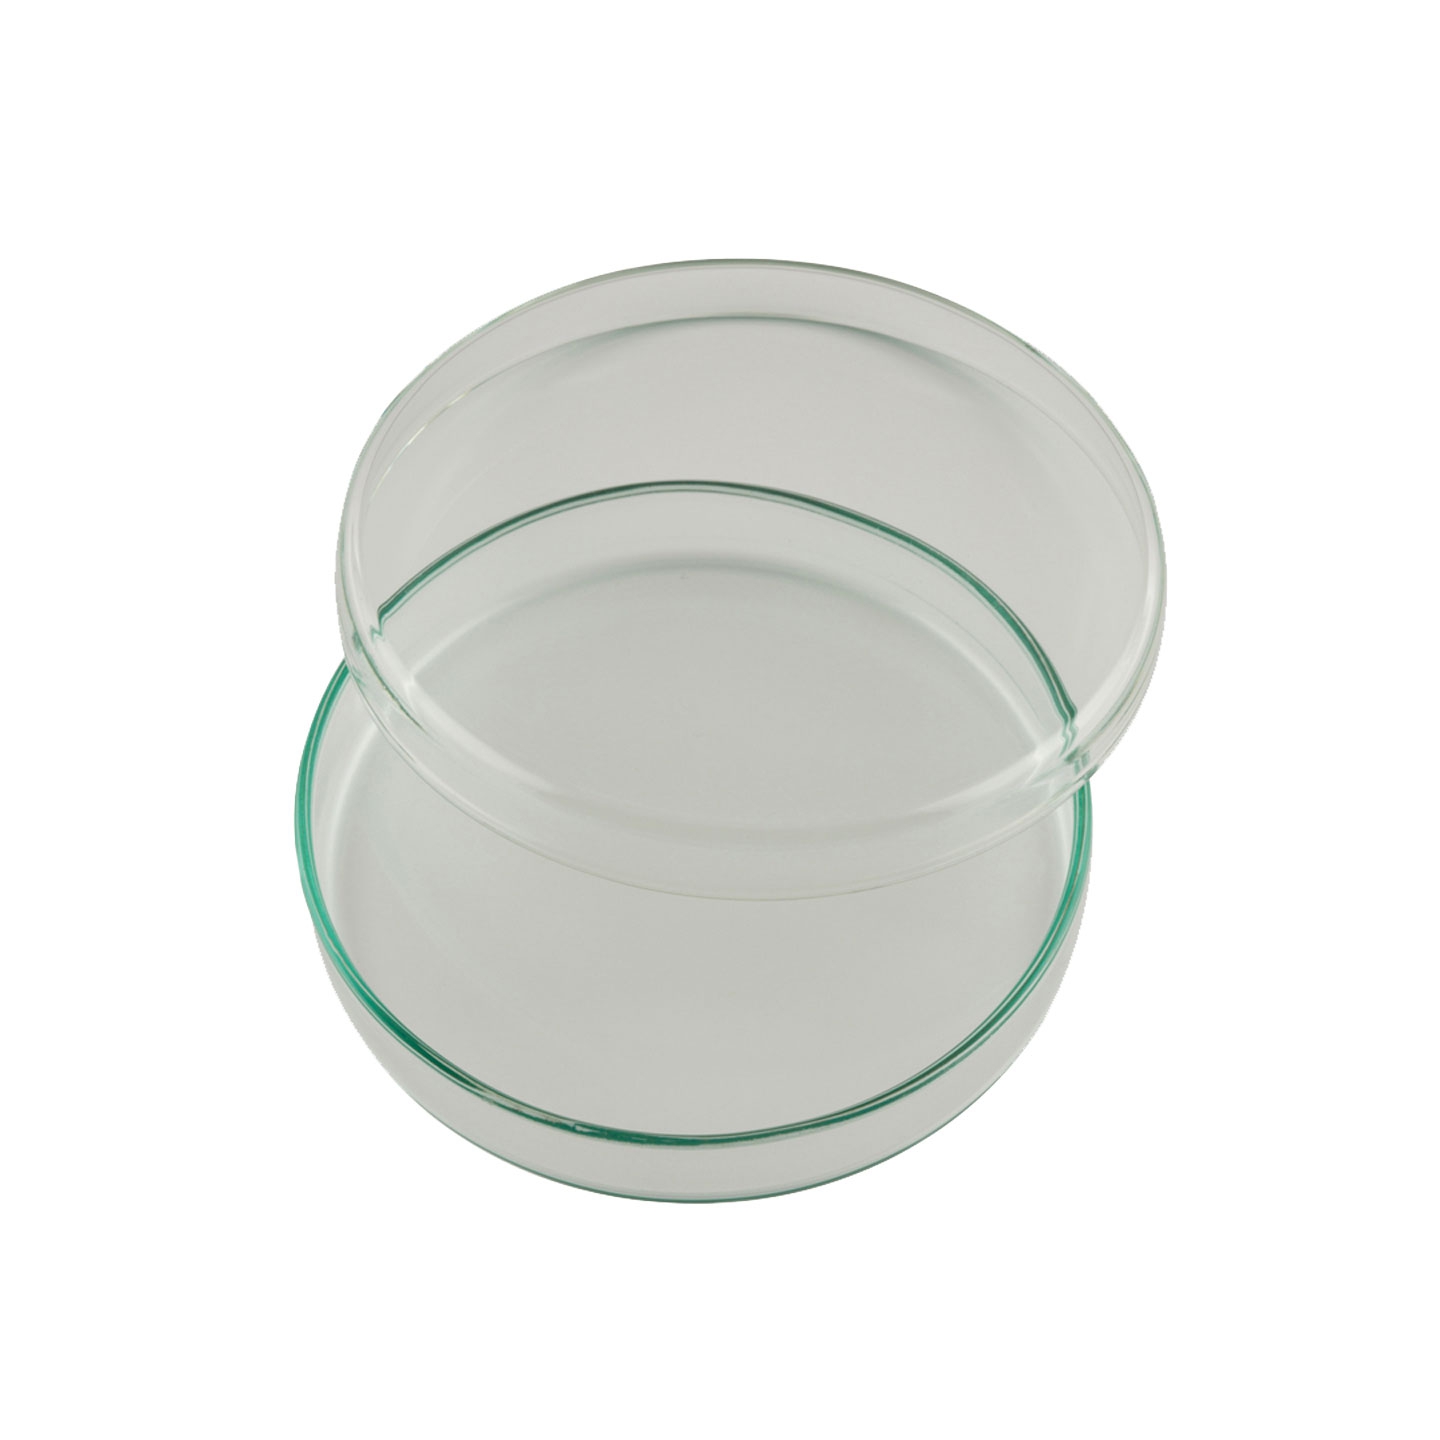 Petri Dish, Up To 160 Deg, 100mm X 12mm, Heat Resistant Glass